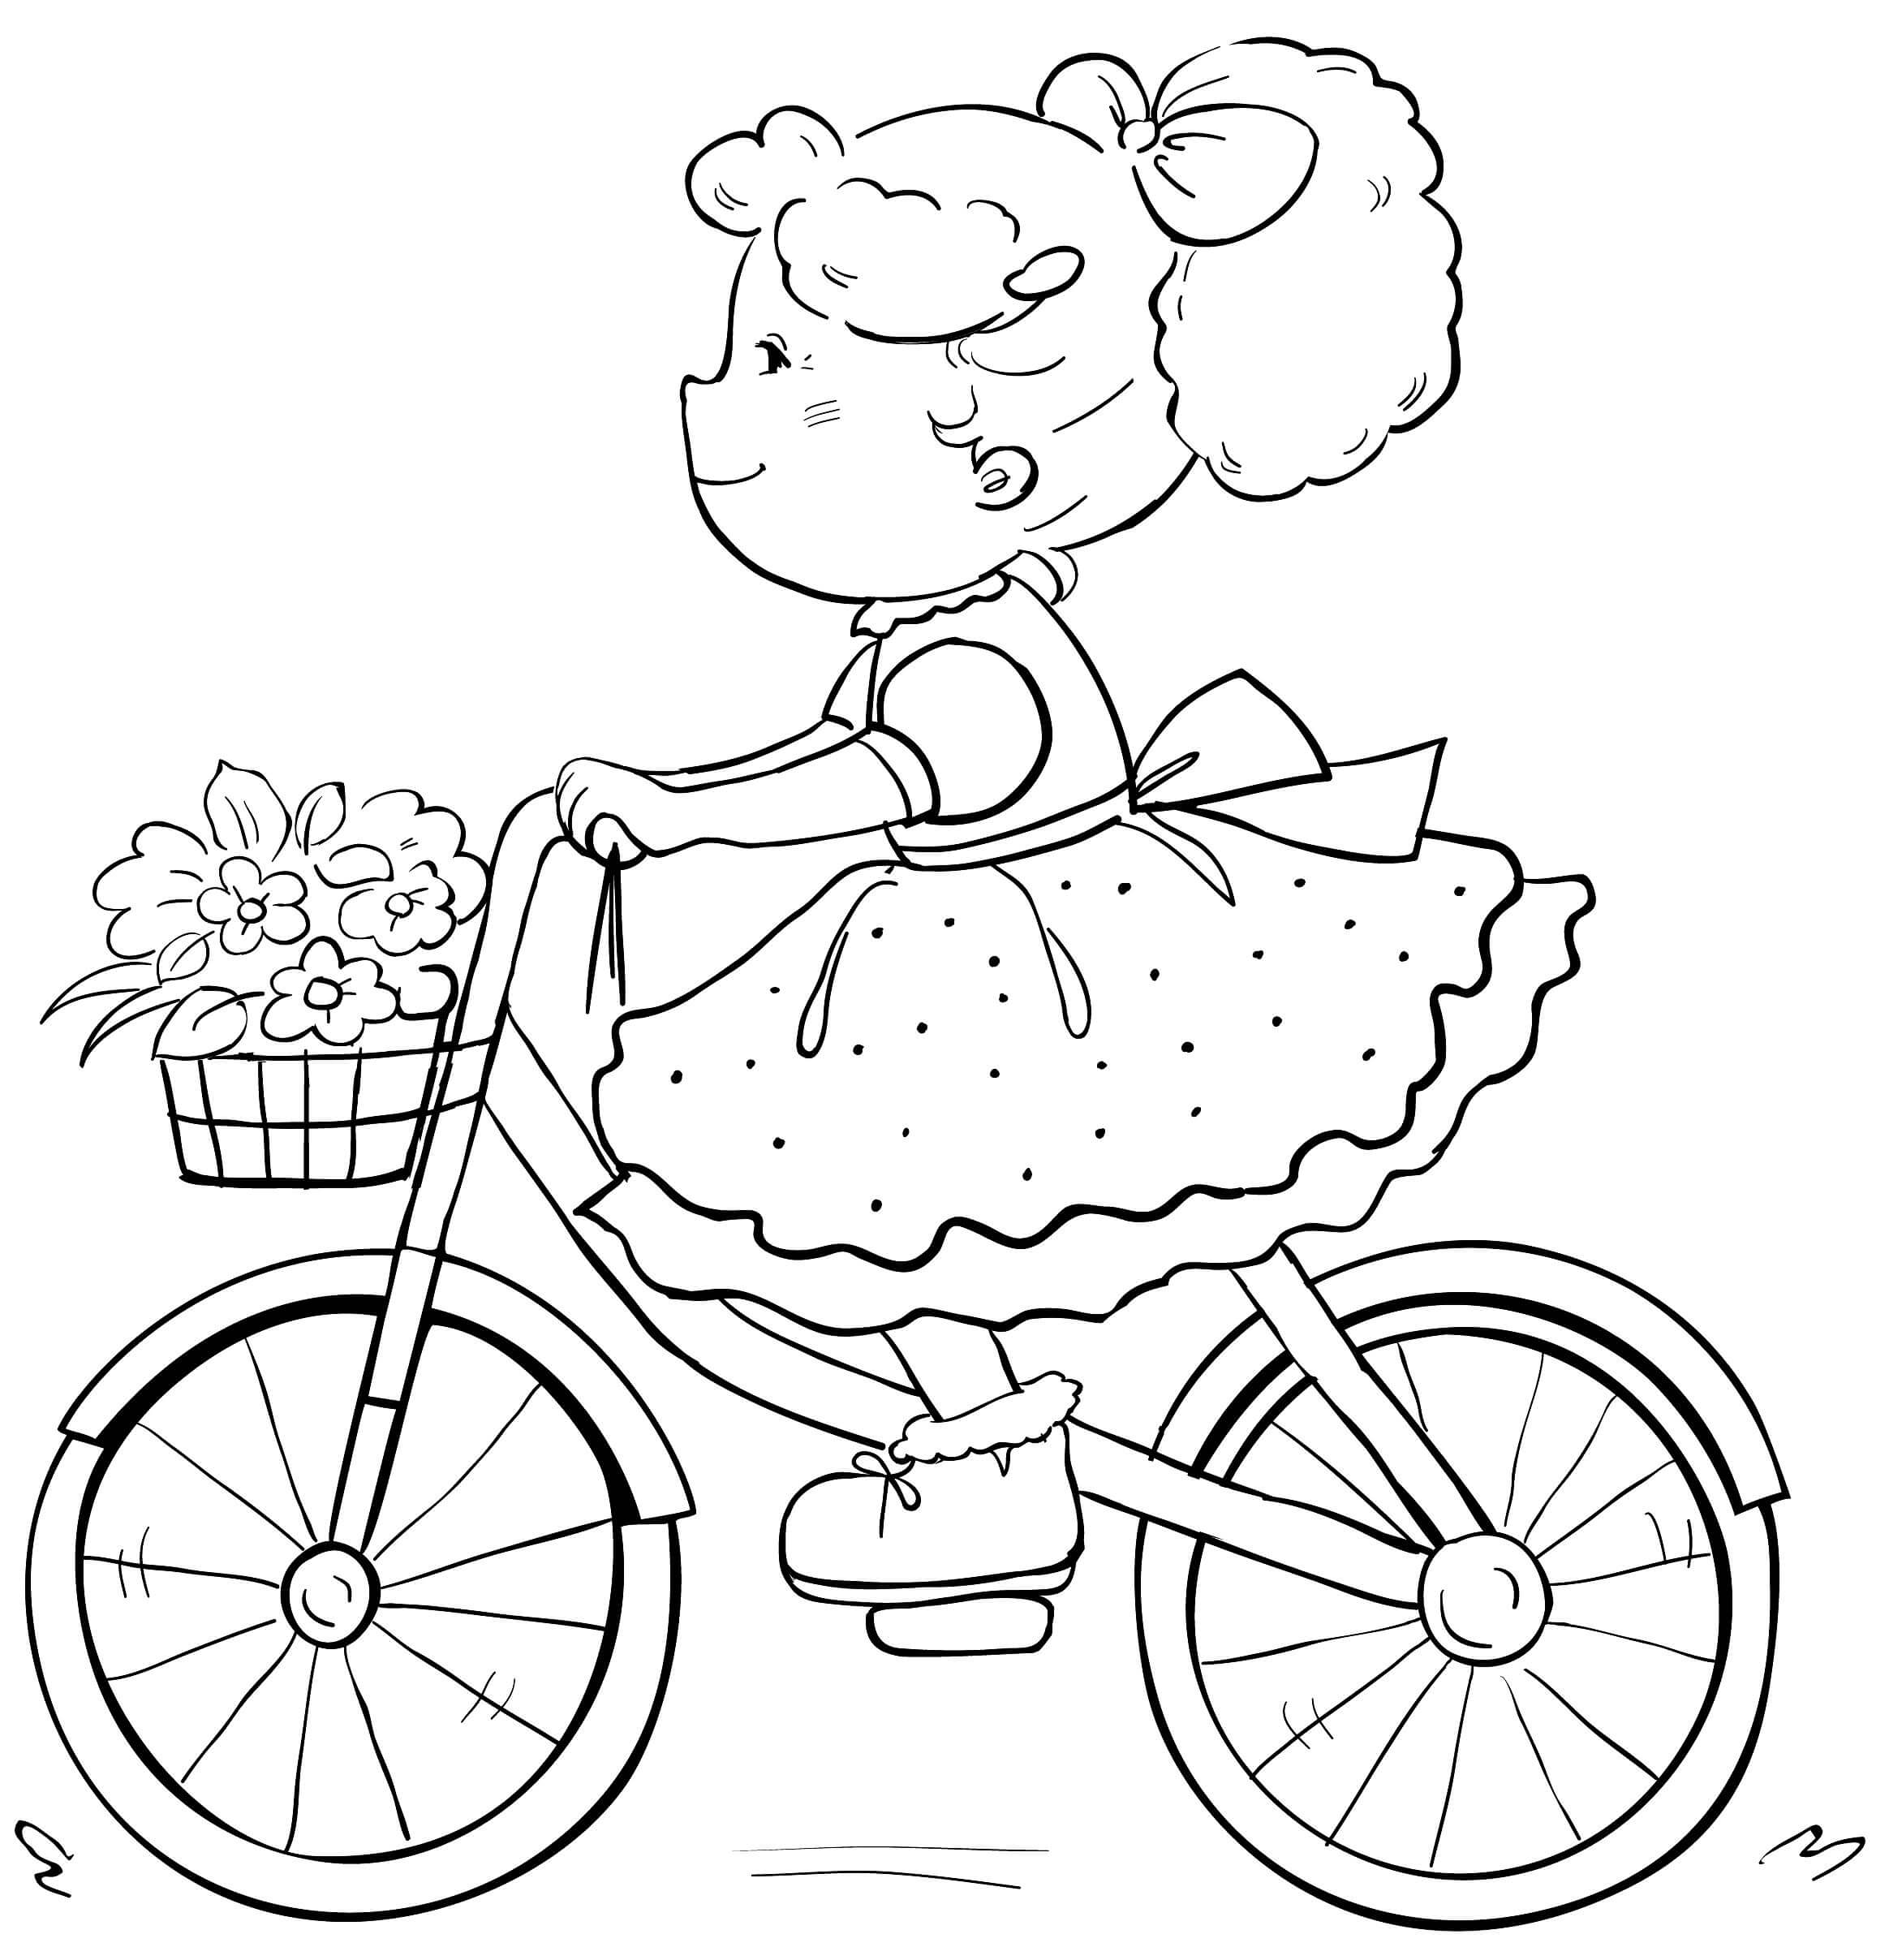 Sóc Nhí - doc tin - Họa sĩ nhí - Đọc tin - Học vẽ chiếc xe đạp thân thương  - Họa sĩ nhí - Đọc tin - Học vẽ chiếc xe đạp thân thương